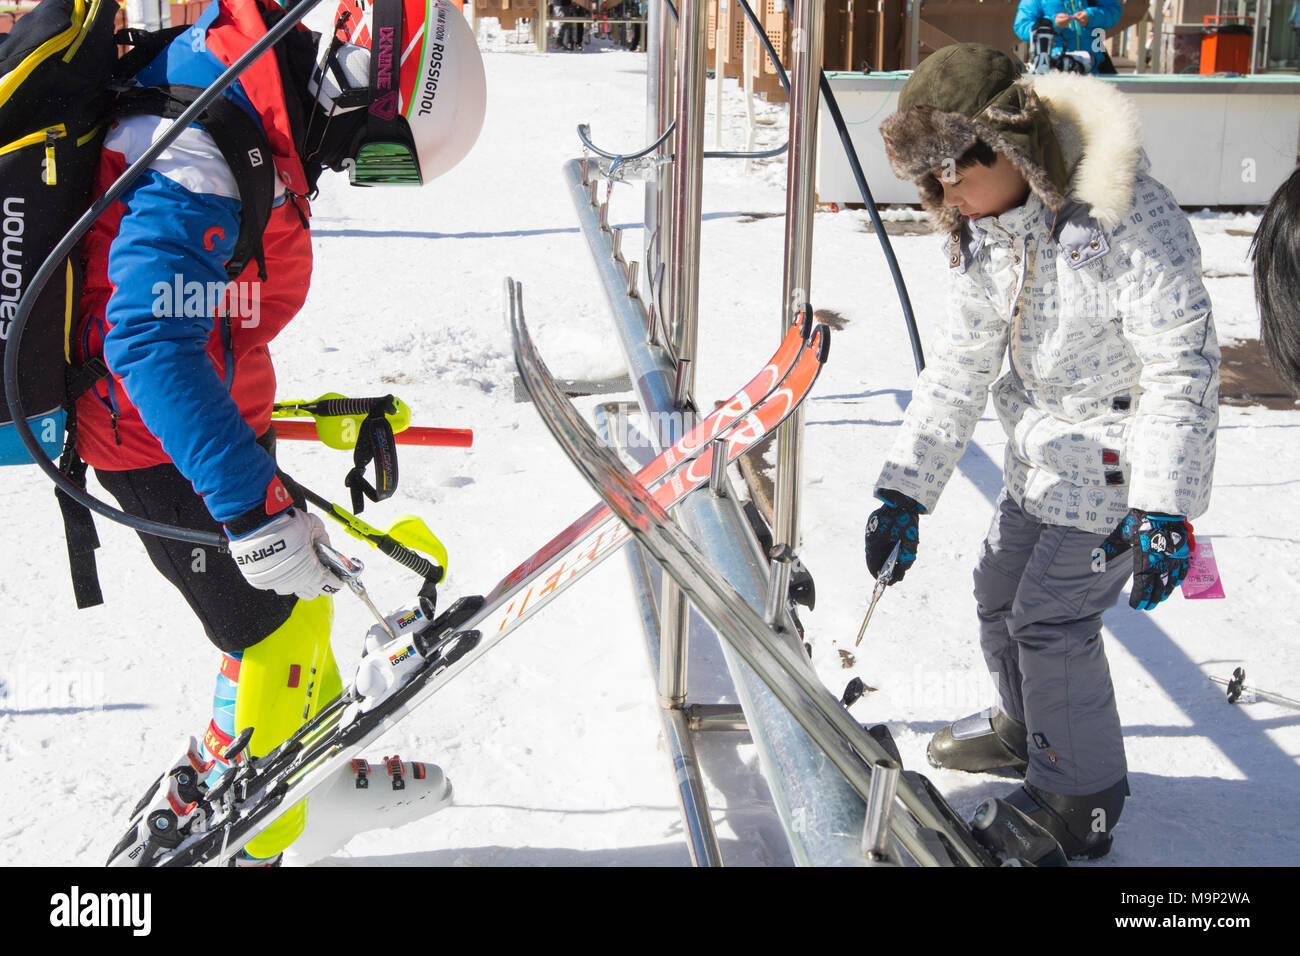 Due bambini sono la pulizia loro sci con aria pressurizzata pistole in Alpensia resort, Gangwon-do regione, Corea del Sud. Il Alpensia Resort è una località sciistica e una attrazione turistica. Esso si trova sul territorio del comune di Daegwallyeong-myeon, nella contea di Pyeongchang, ospitando le Olimpiadi Invernali nel febbraio 2018. La stazione sciistica è di circa 2 ore e mezzo da Seoul o dall'Aeroporto di Incheon in auto, prevalentemente tutti autostrada. Alpensia dispone di 6 piste per lo sci e lo snowboard, con corse fino a 1,4 km (0,87 mi) lungo, per principianti e progrediti, e un'area riservata Foto Stock